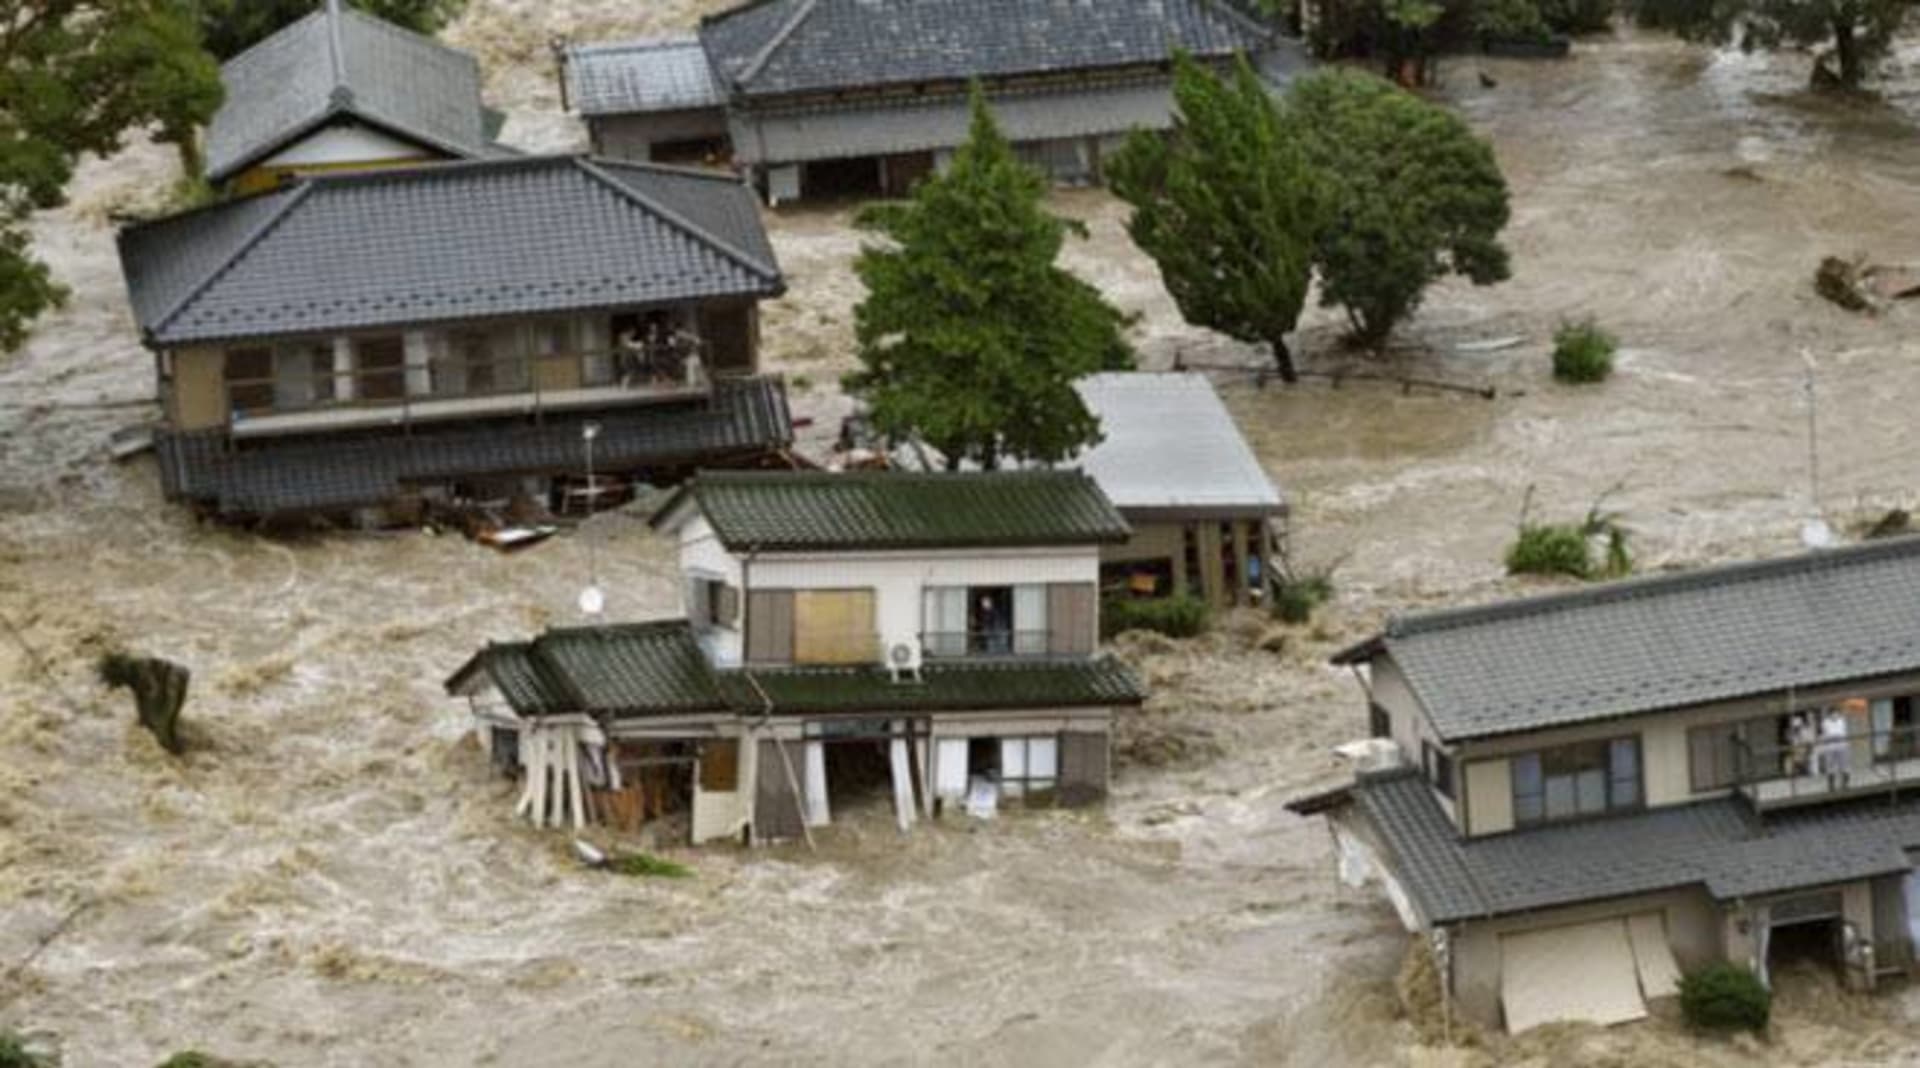 Záplavy v Japonsku